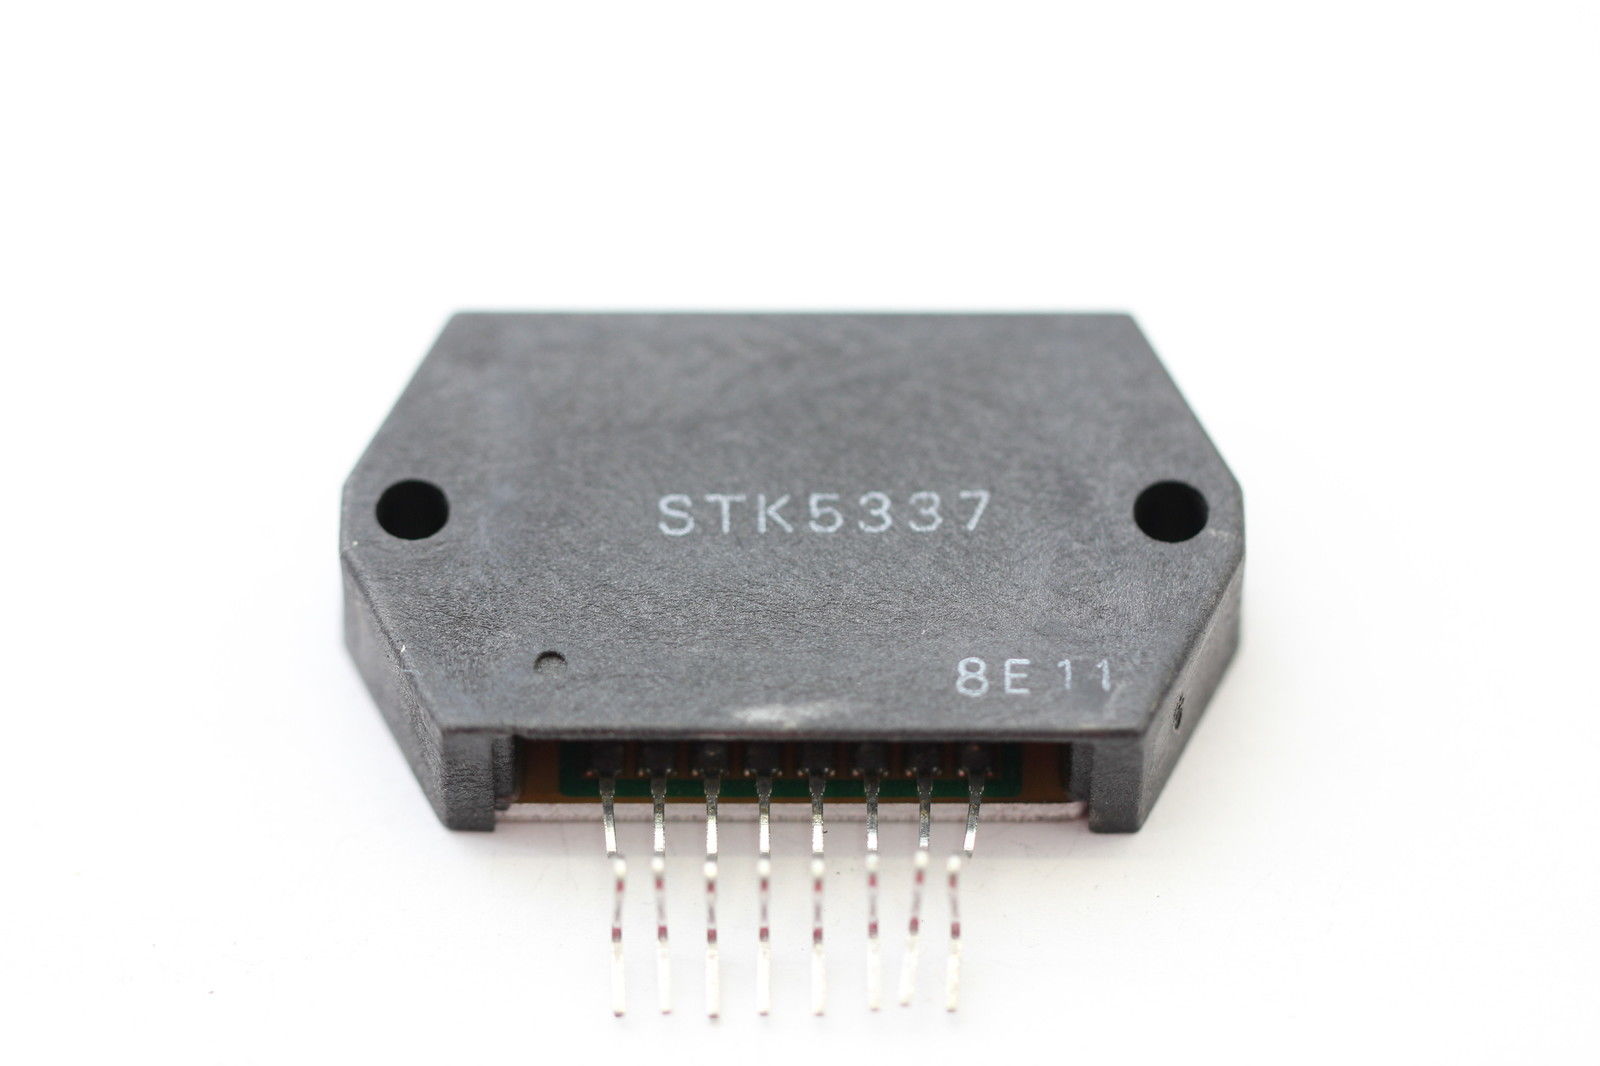 STK5337